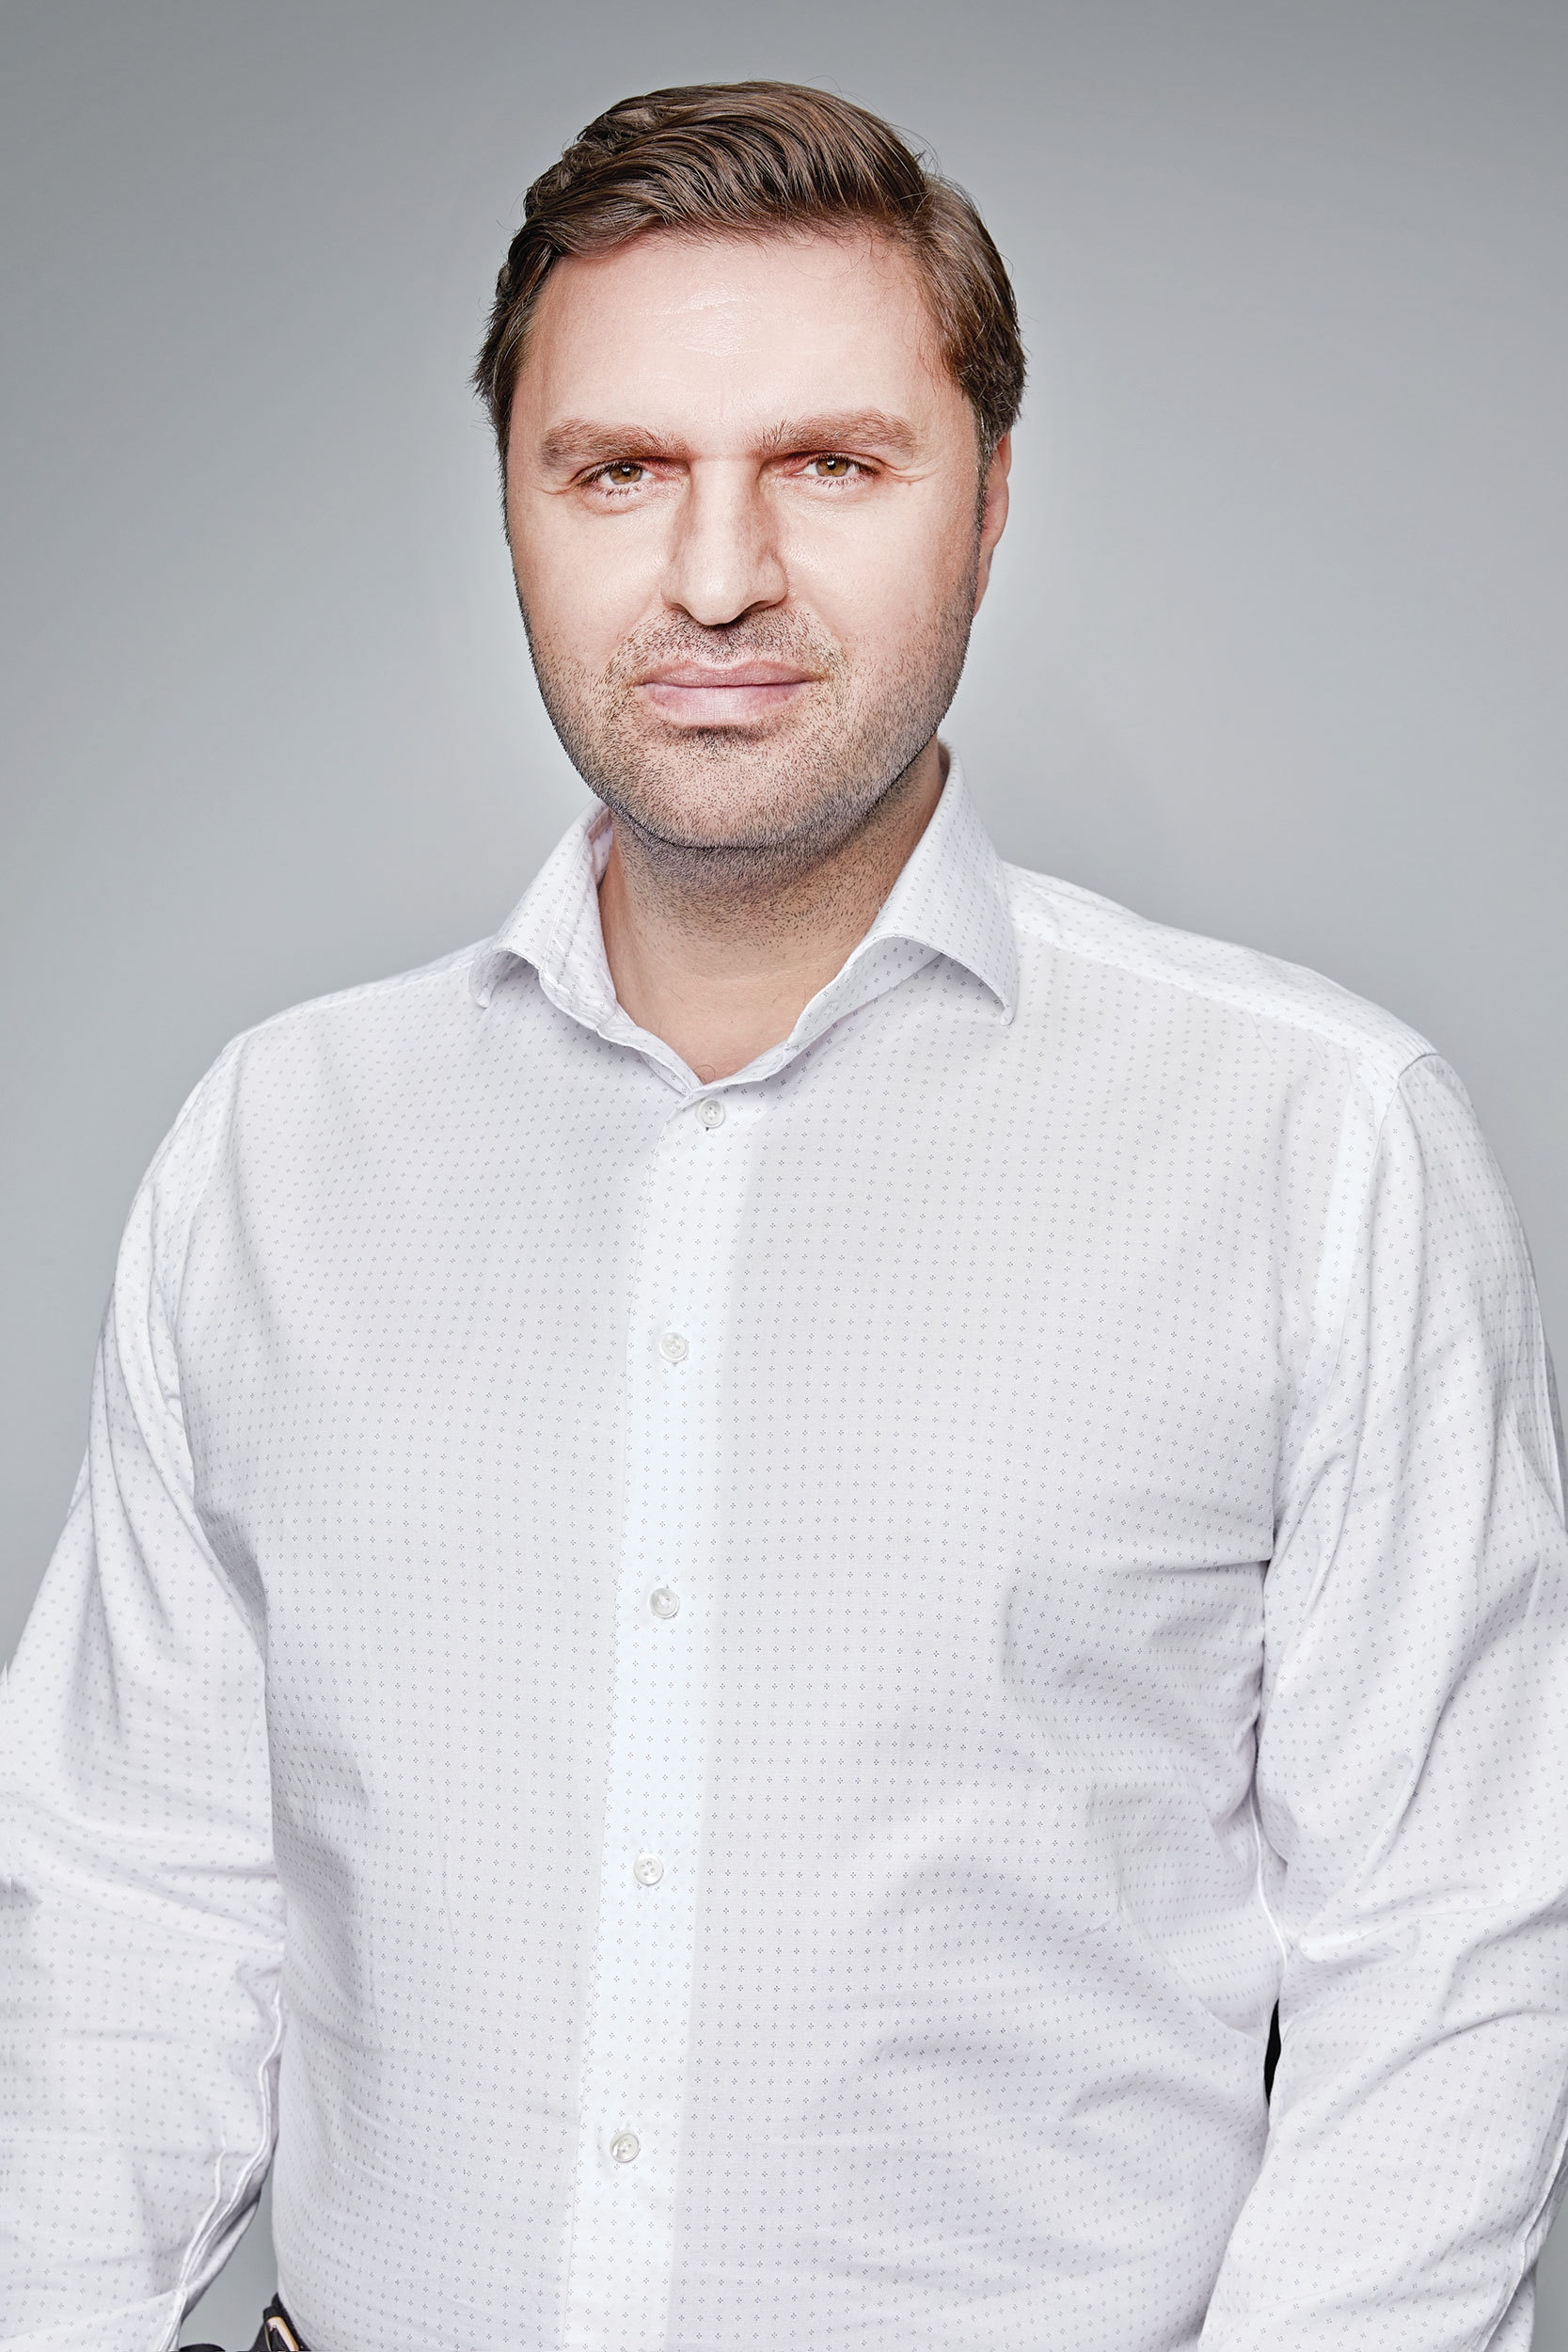 Business MAGAZIN. Costin Dămăşaru, fondator Veruvis, Centrul de Cercetare în Augmentarea Performanţelor Neuronale: Încerc să citesc 1-2 ore pe zi 